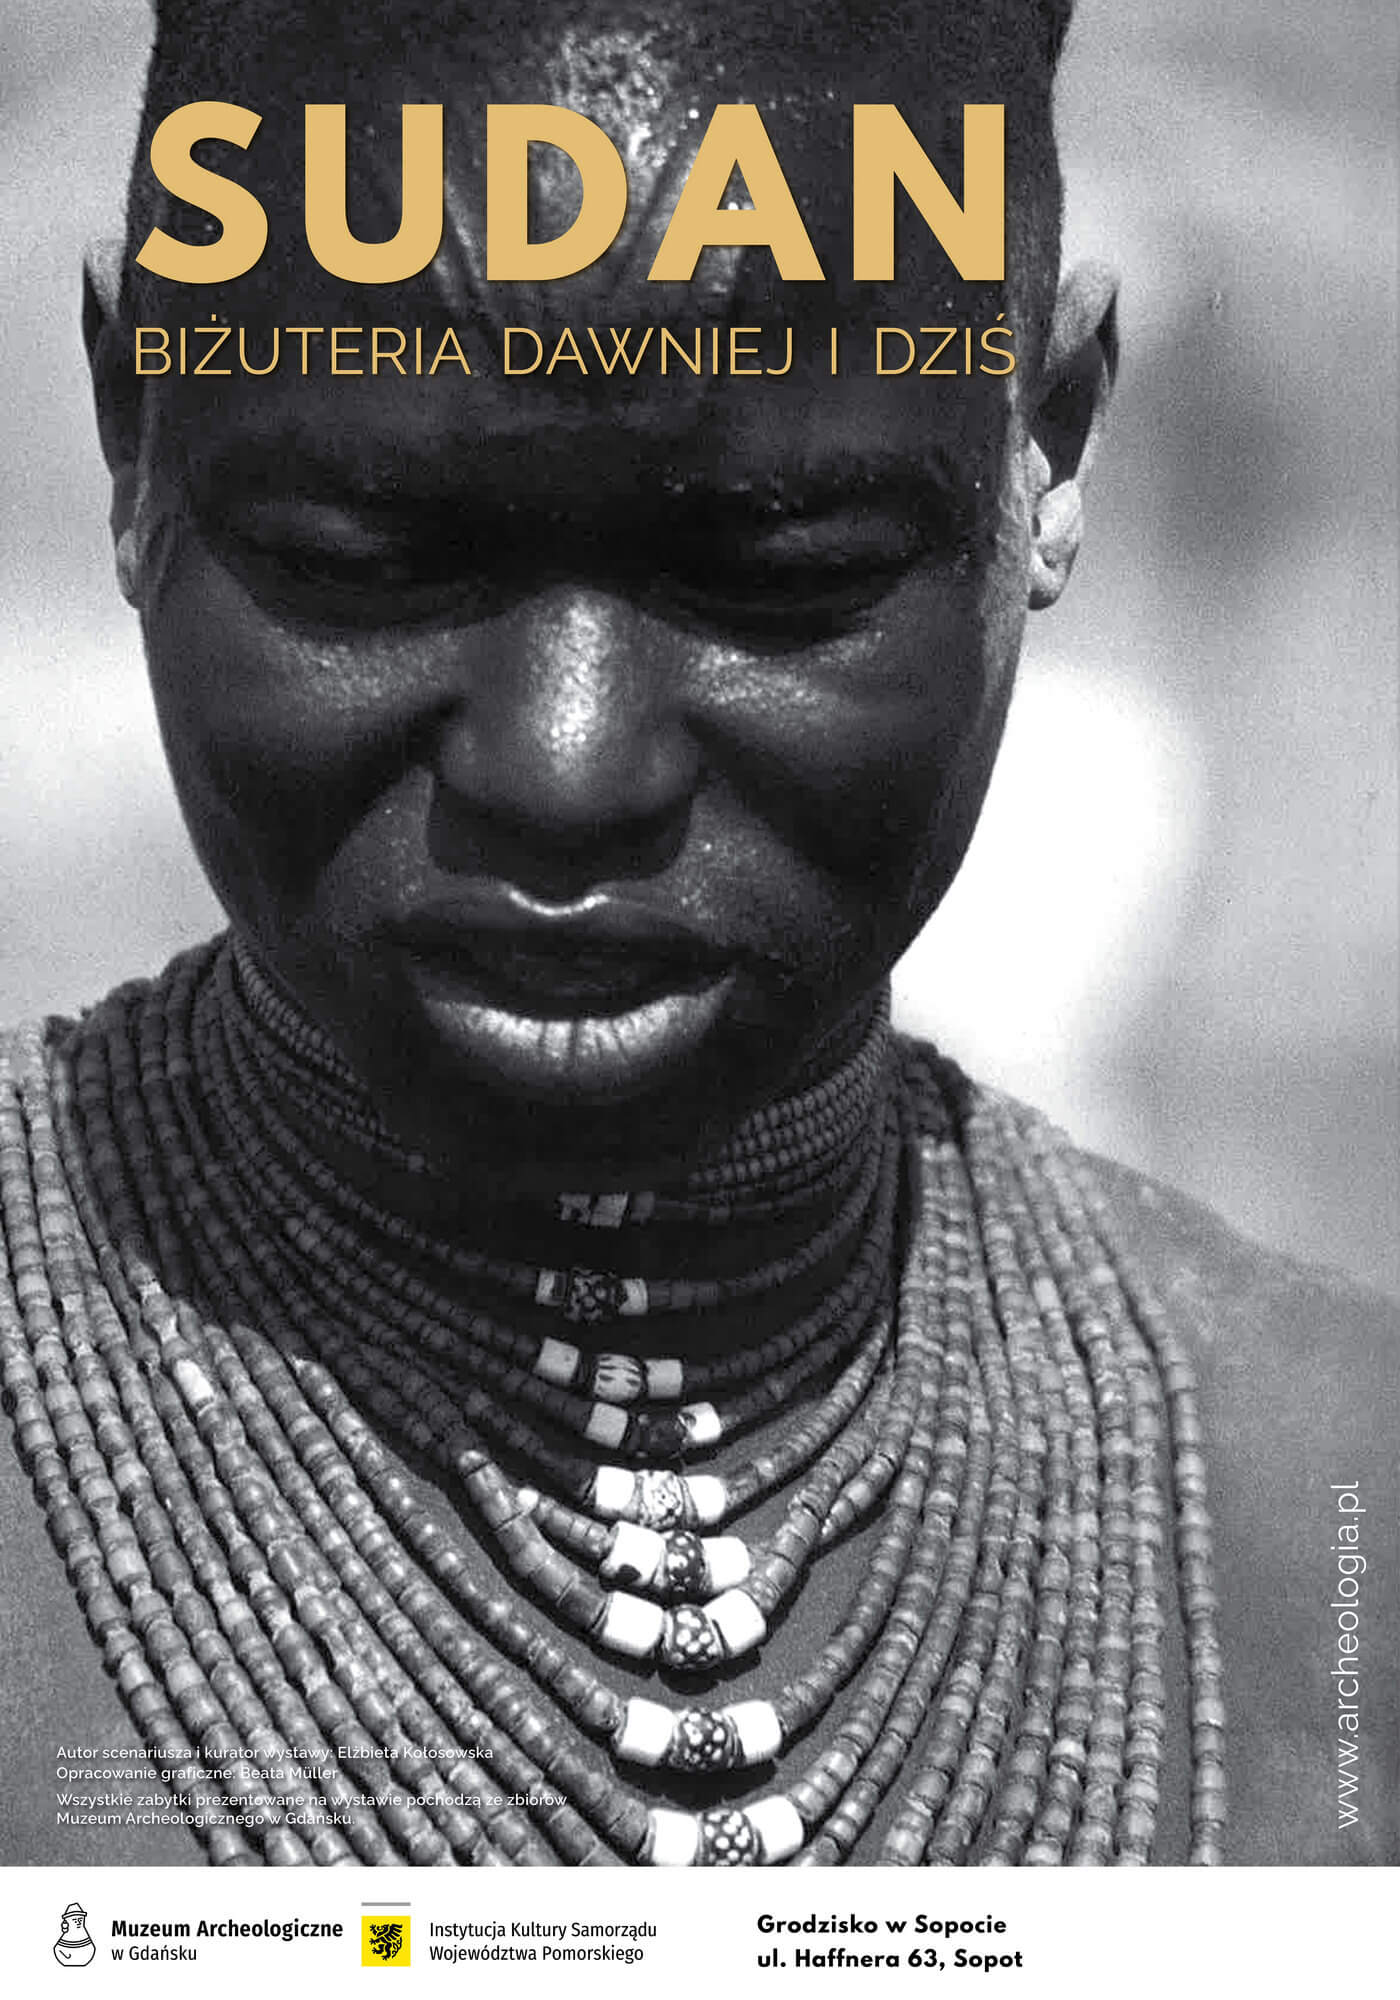 Plakat przedstawia monochromatyczne zdjęcie czarnoskórej kobiety, rdzennej mieszkanki Afryki. Kobieta jest ozdobiona naszyjnikiem w formie wielu pętli koralików sięgających od szyi aż do piersi.